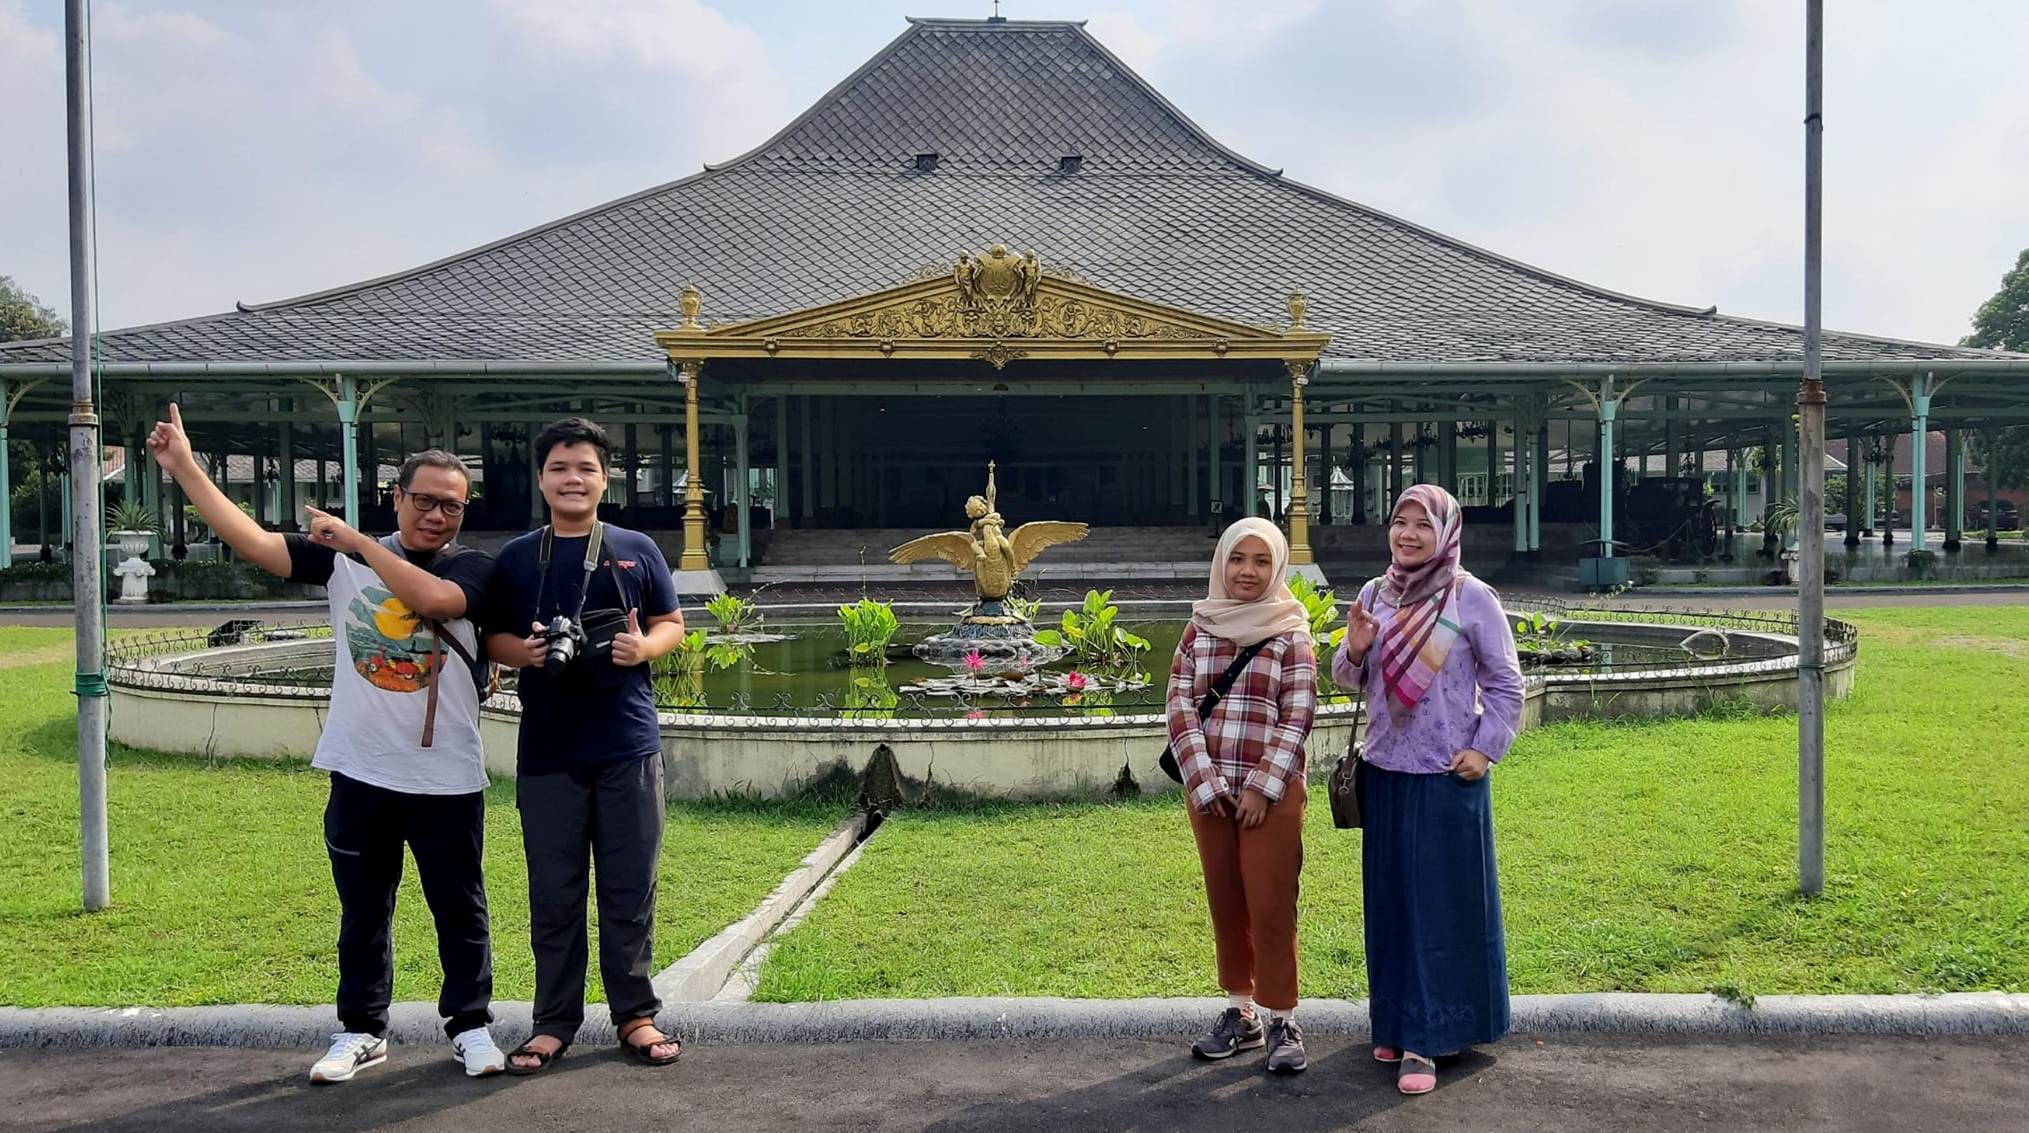 Berwisata ke Pura Mangkunegaran Surakarta yang Megah dan MemesonaNurul Sufitri Travel Blog